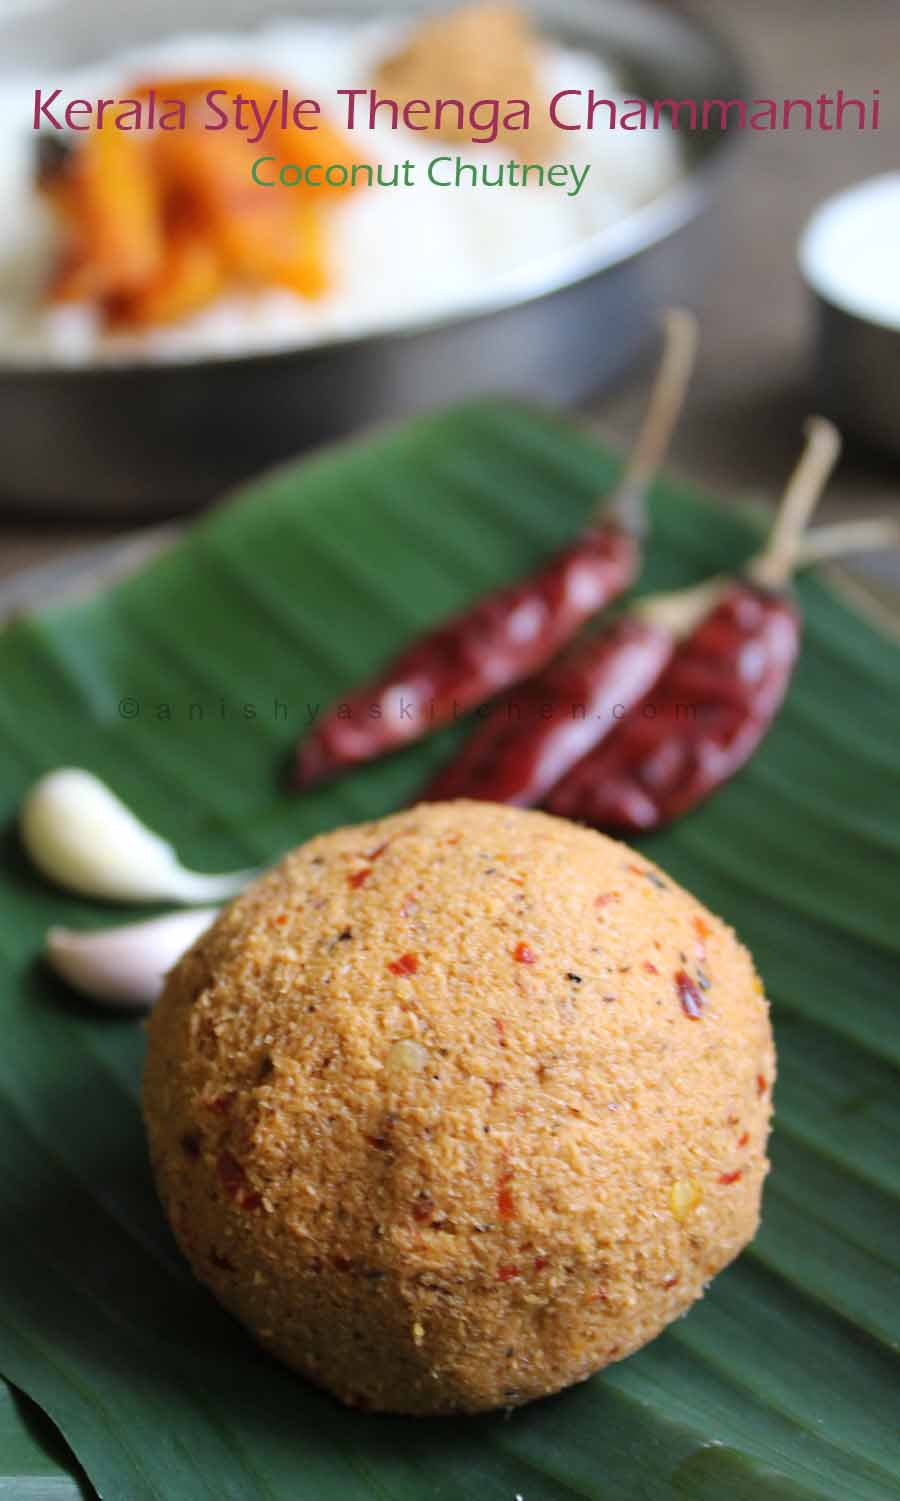 Kerala Style Thenga Chammanthi - Coconut Chutney